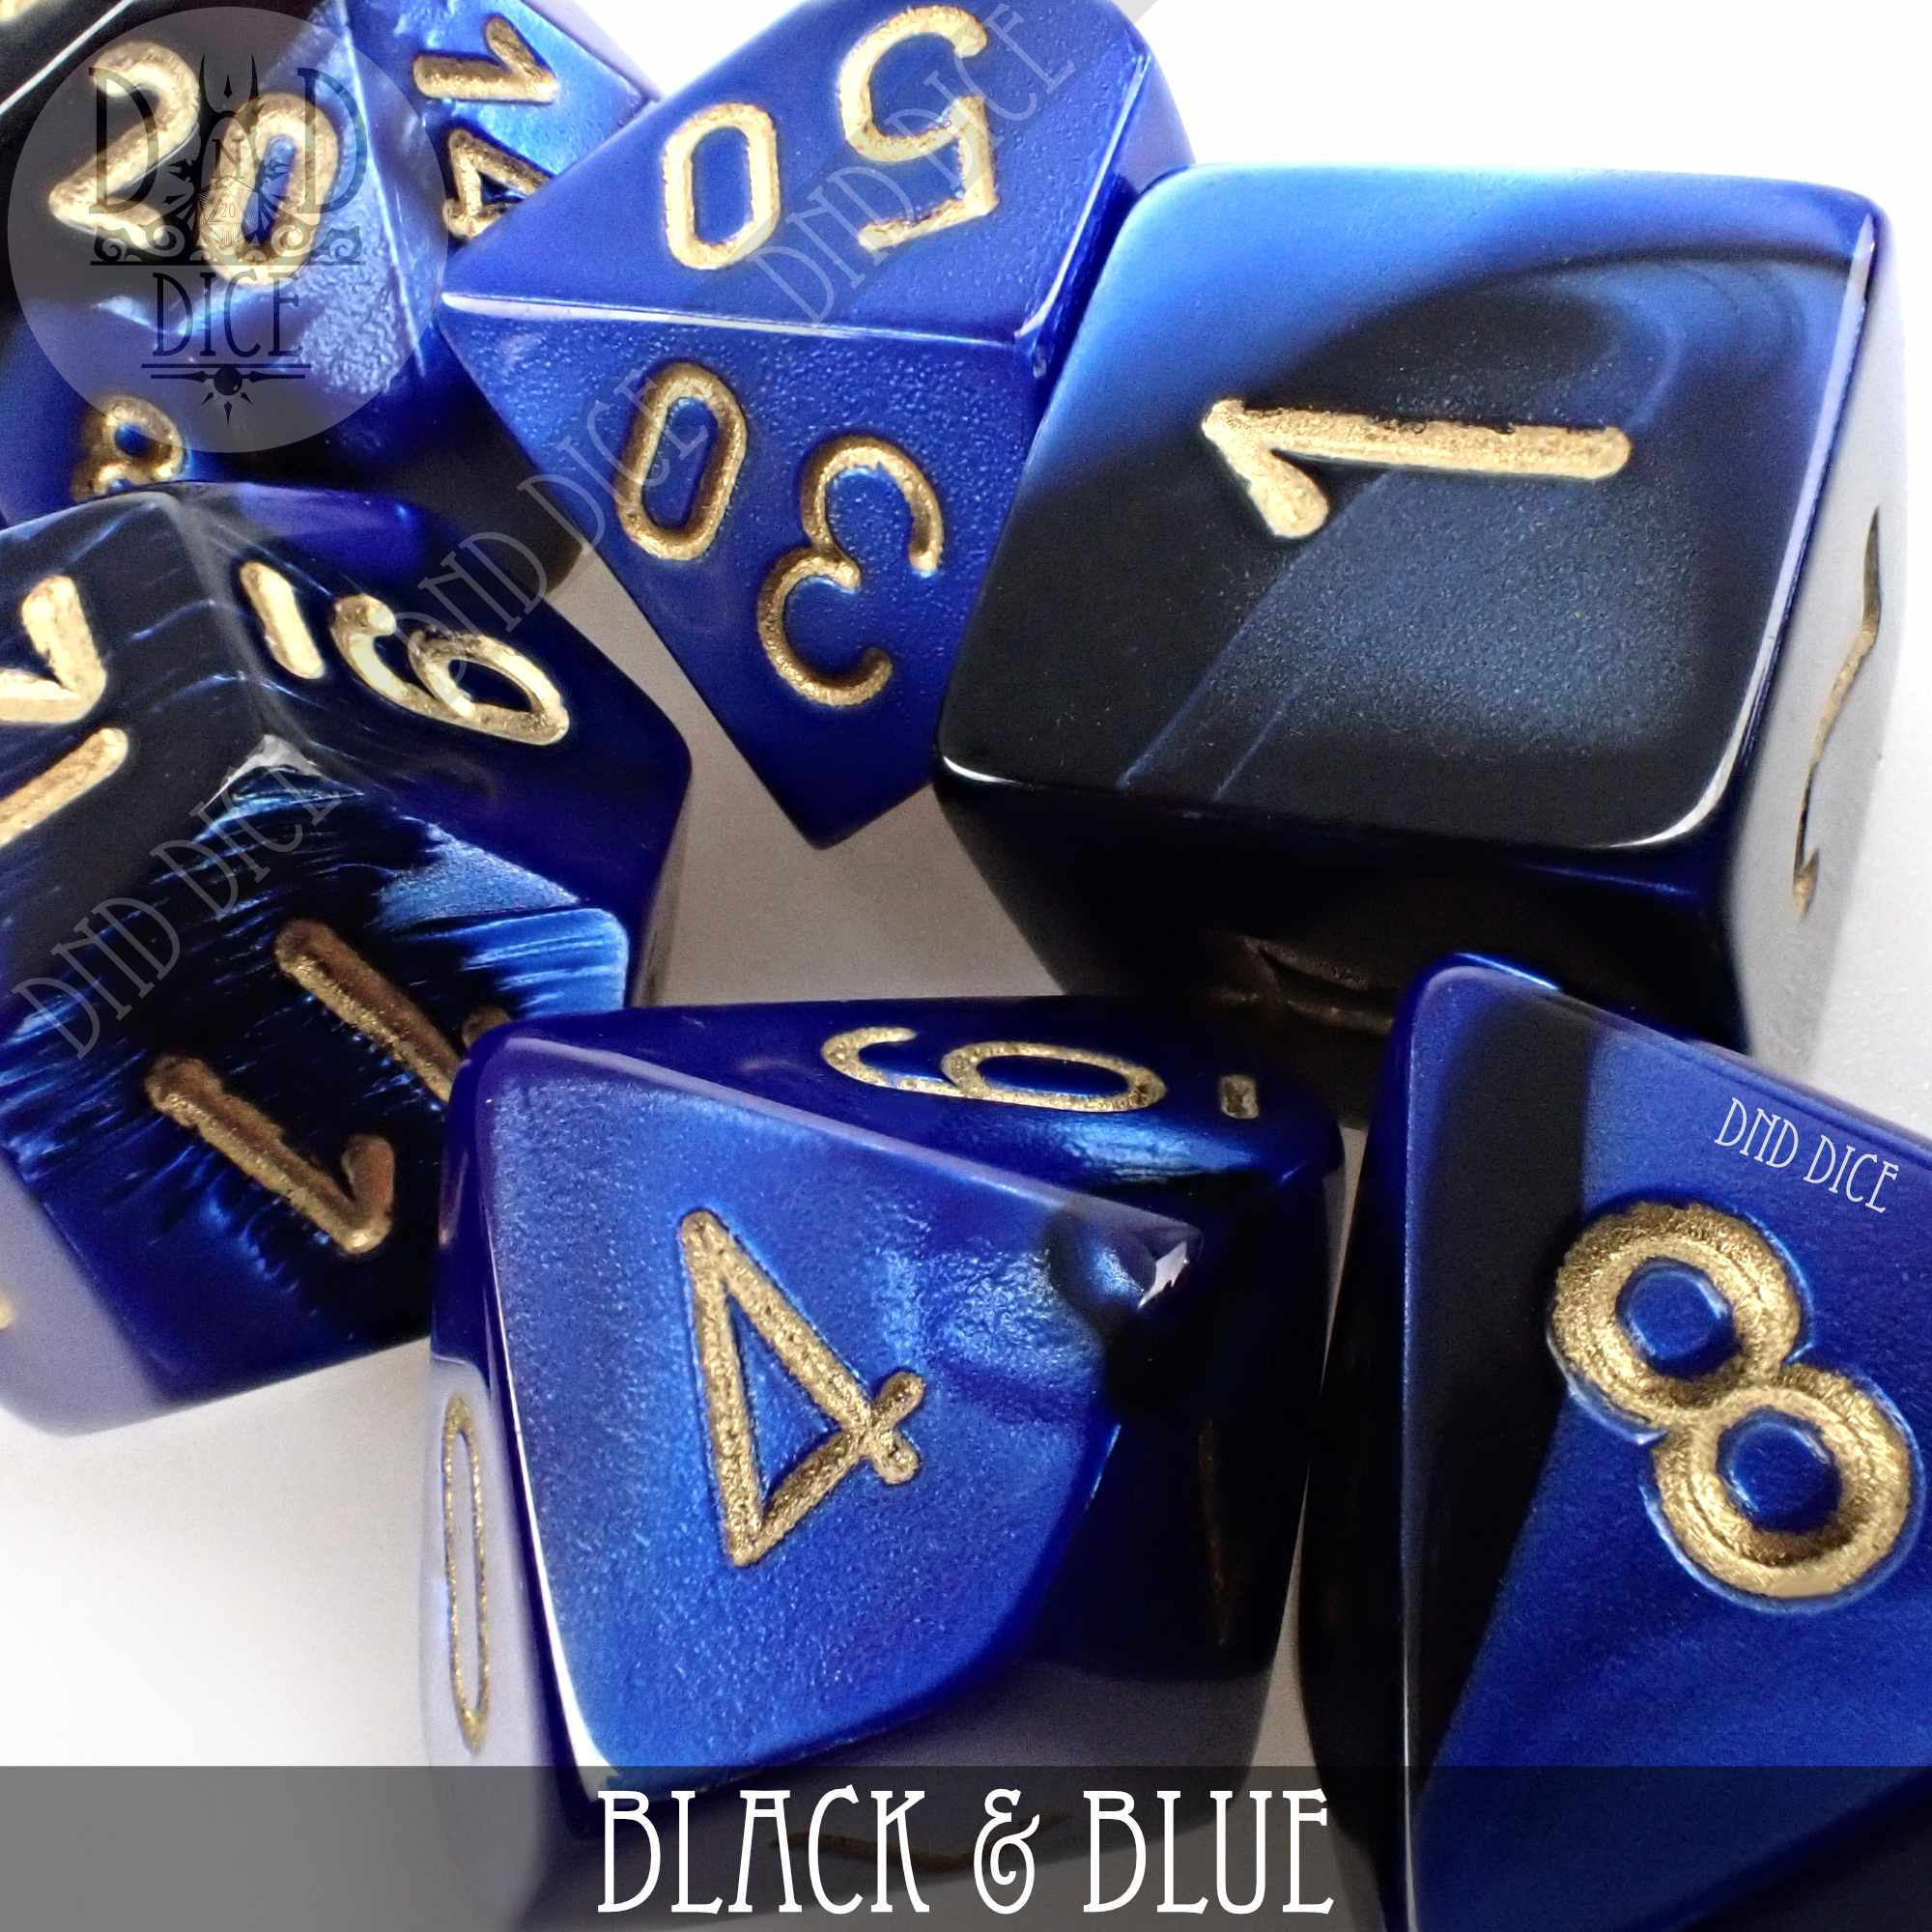 Black & Blue Build Your Own Set